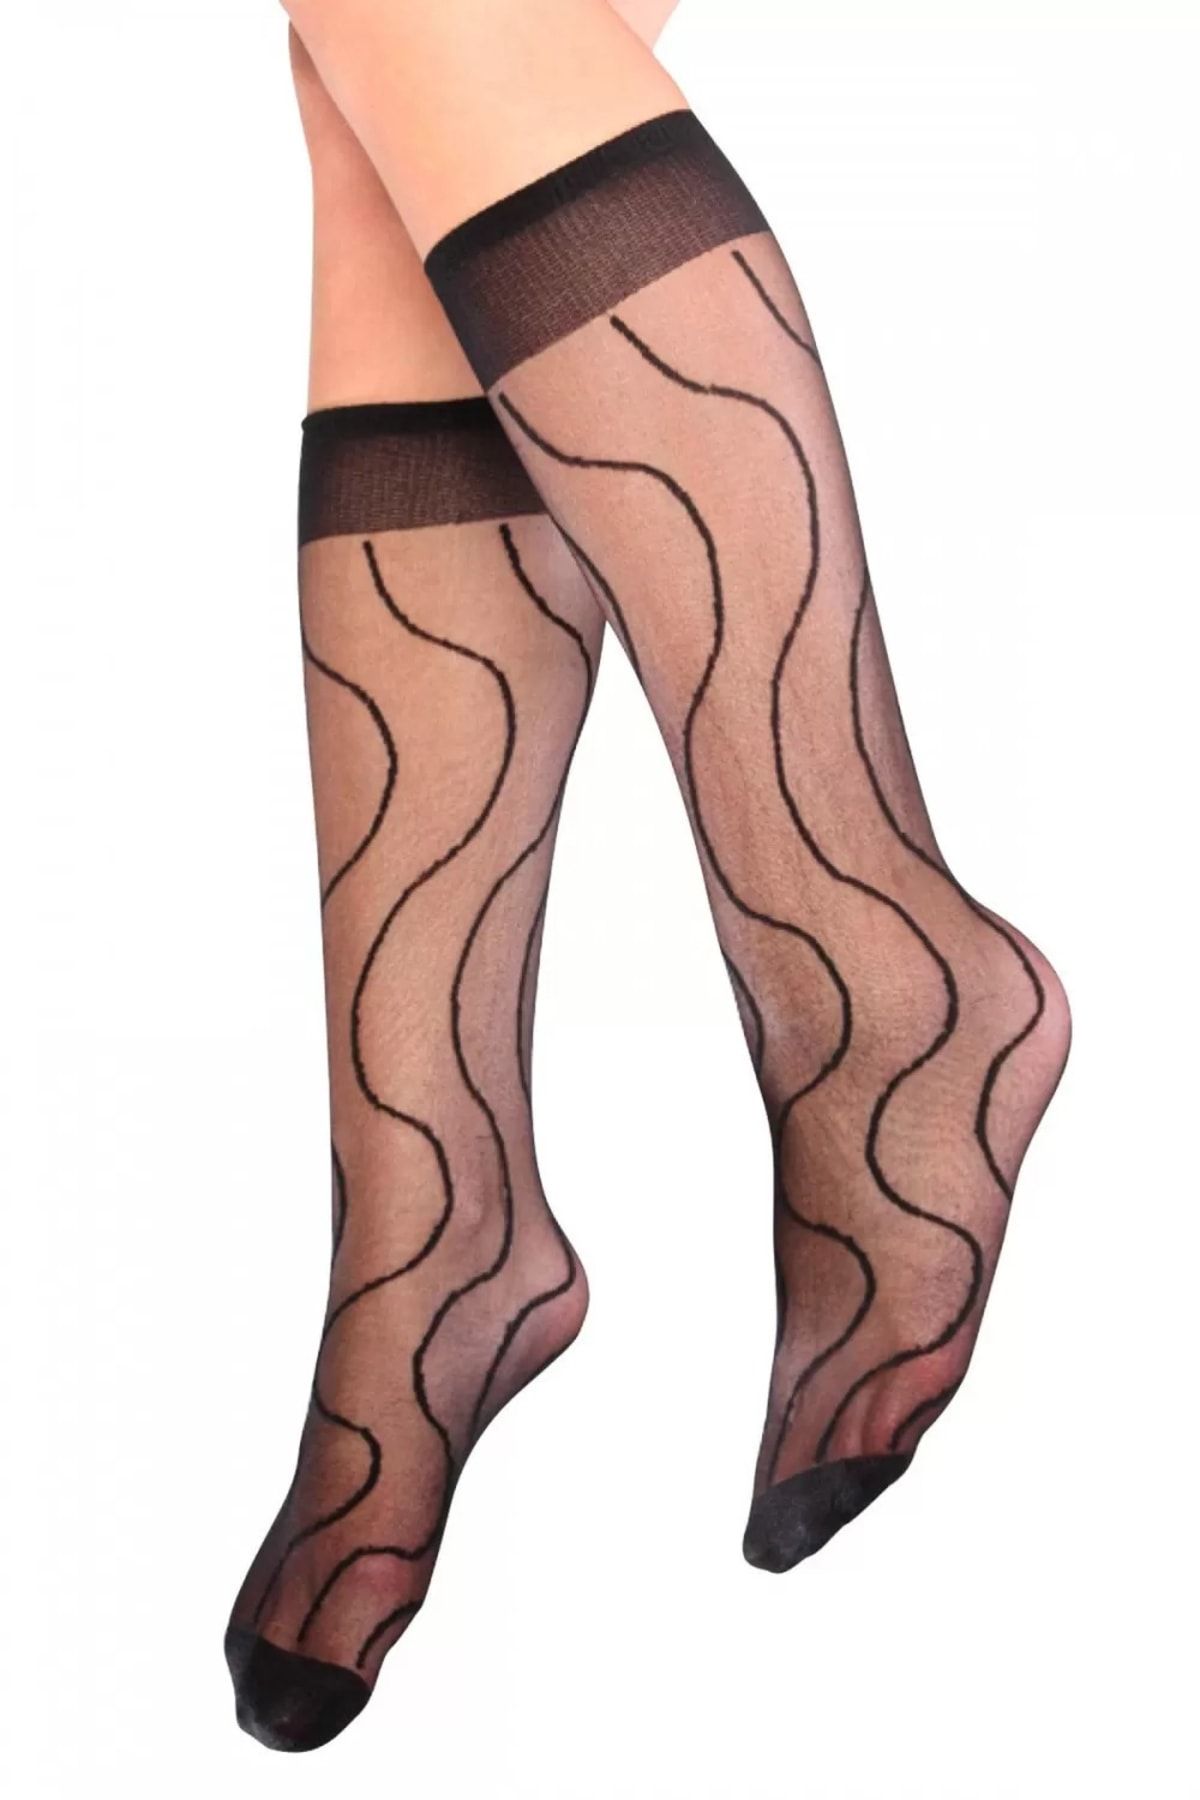 Lukas Nehir Desenli Dizaltı Kadın Çorap Siyah - Lks0309.3